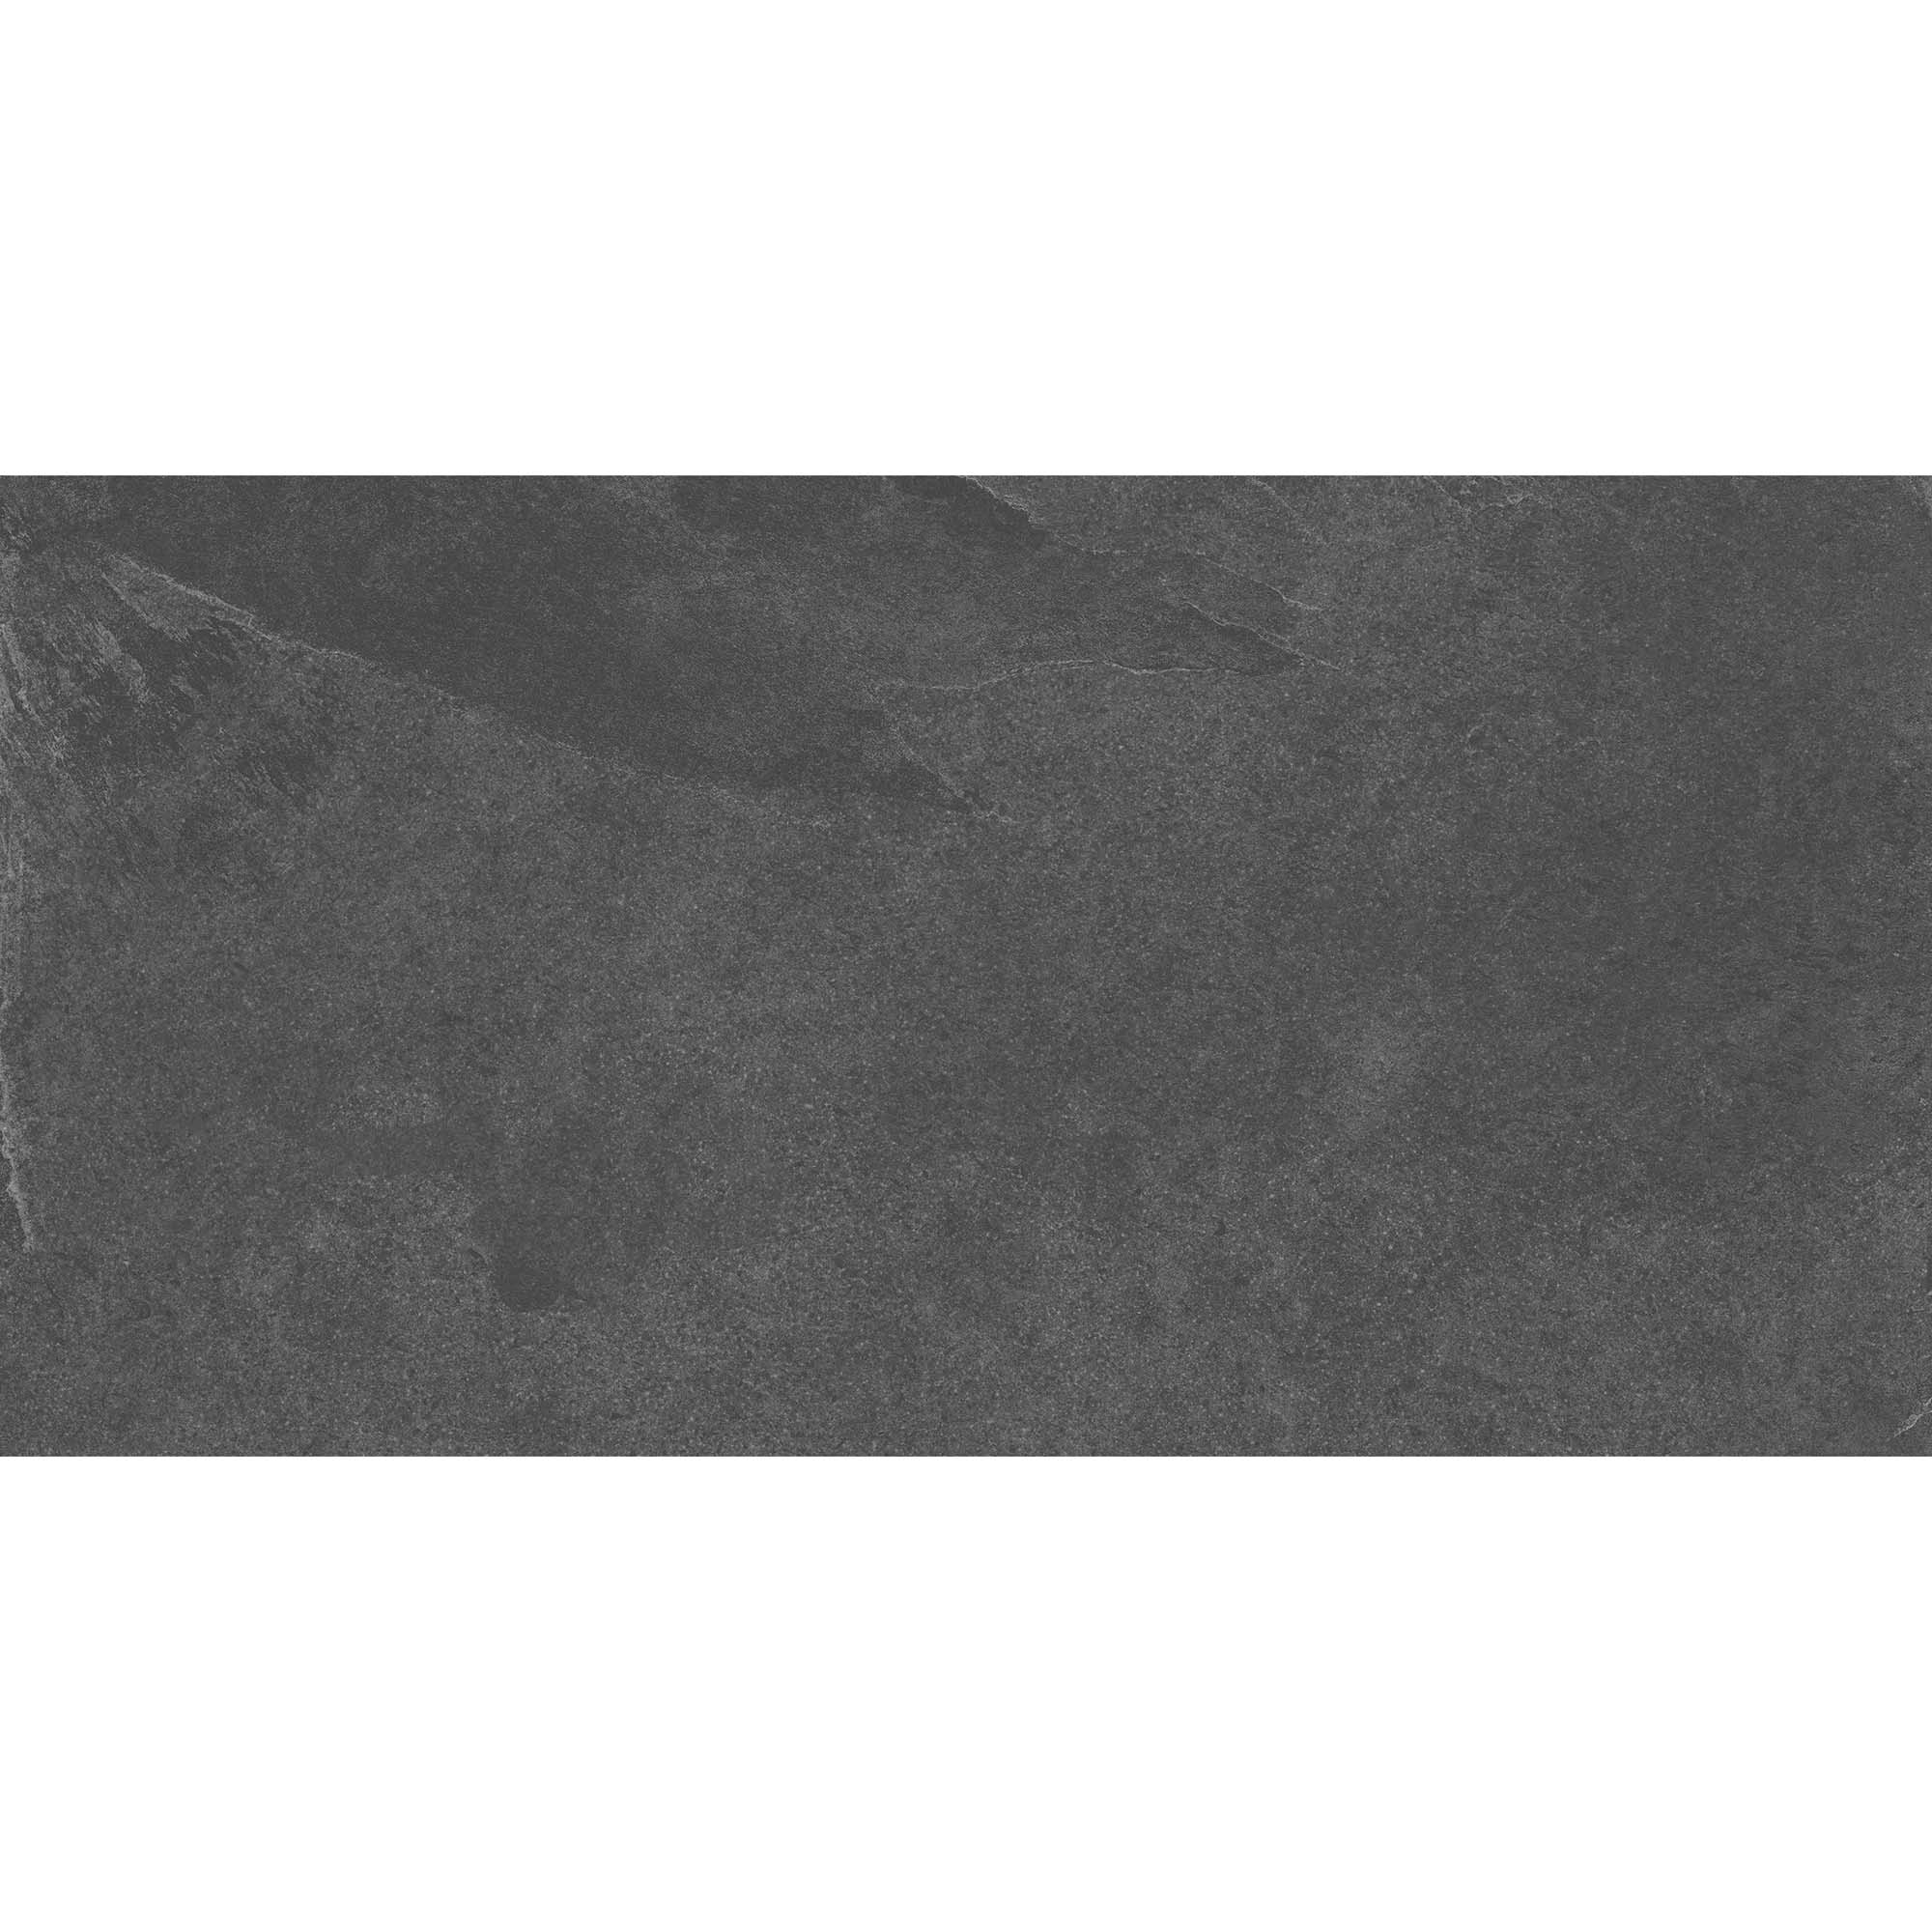 Плитка Estima Terra TE04 неполированный черный 60x120 см плитка estima terra te01 36688 60х60 см неполированный бежевый